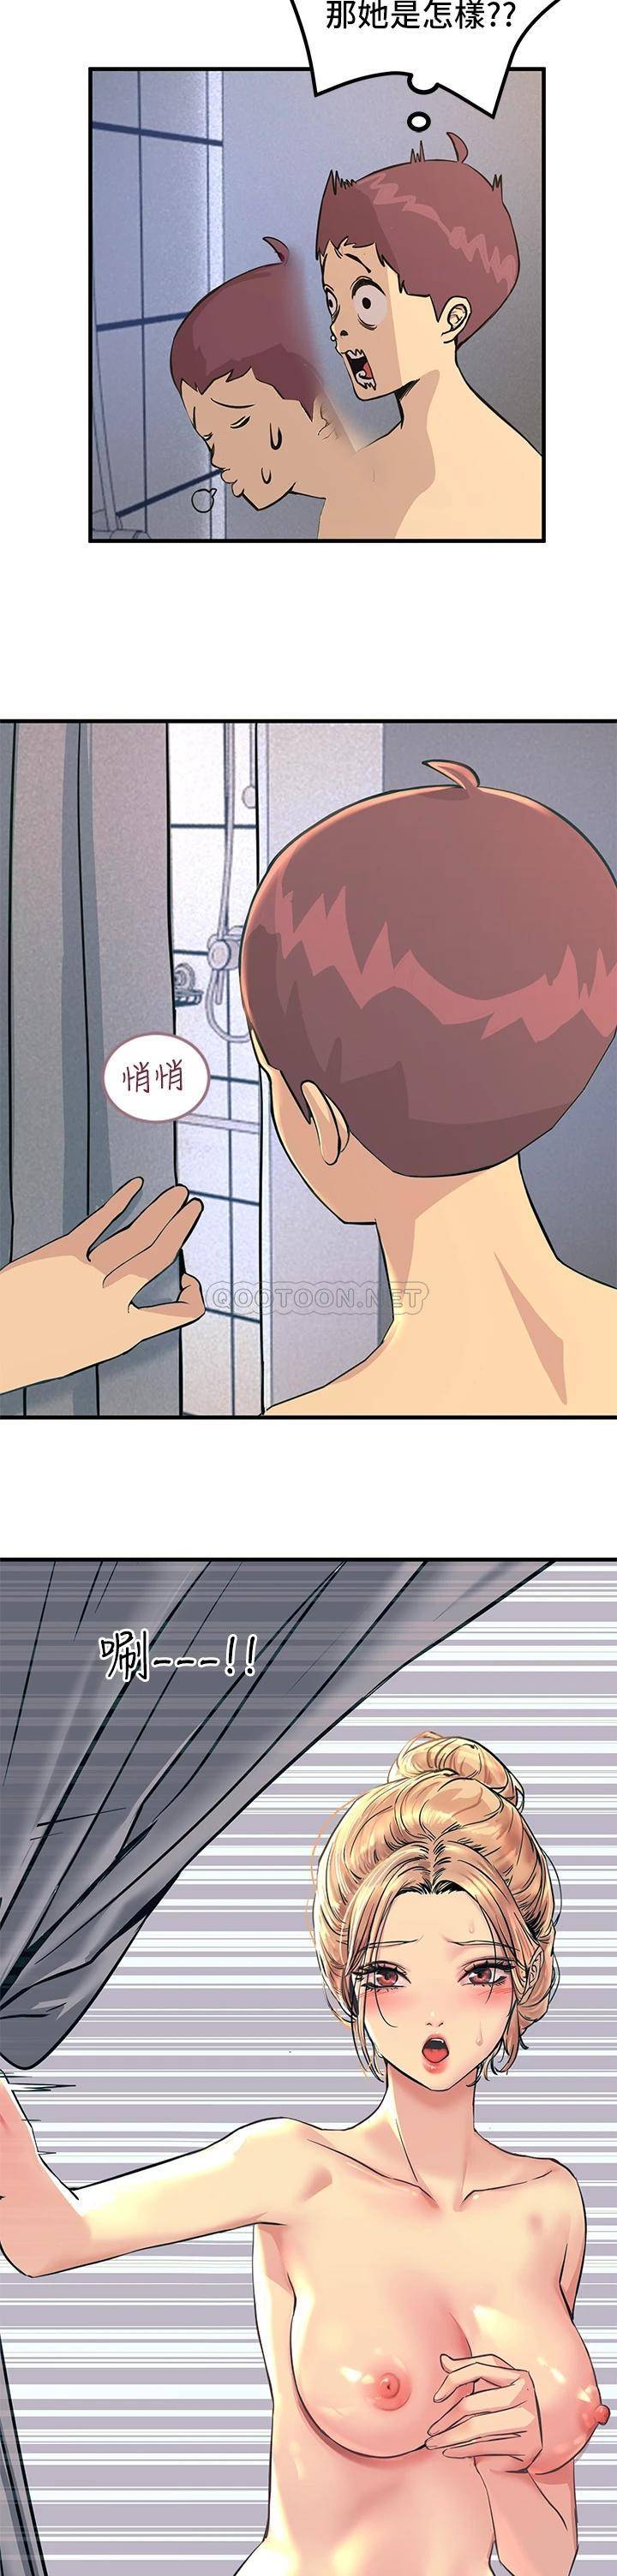 韩国污漫画 觸電大師 第2话 和性感胴体的亲密接触 48